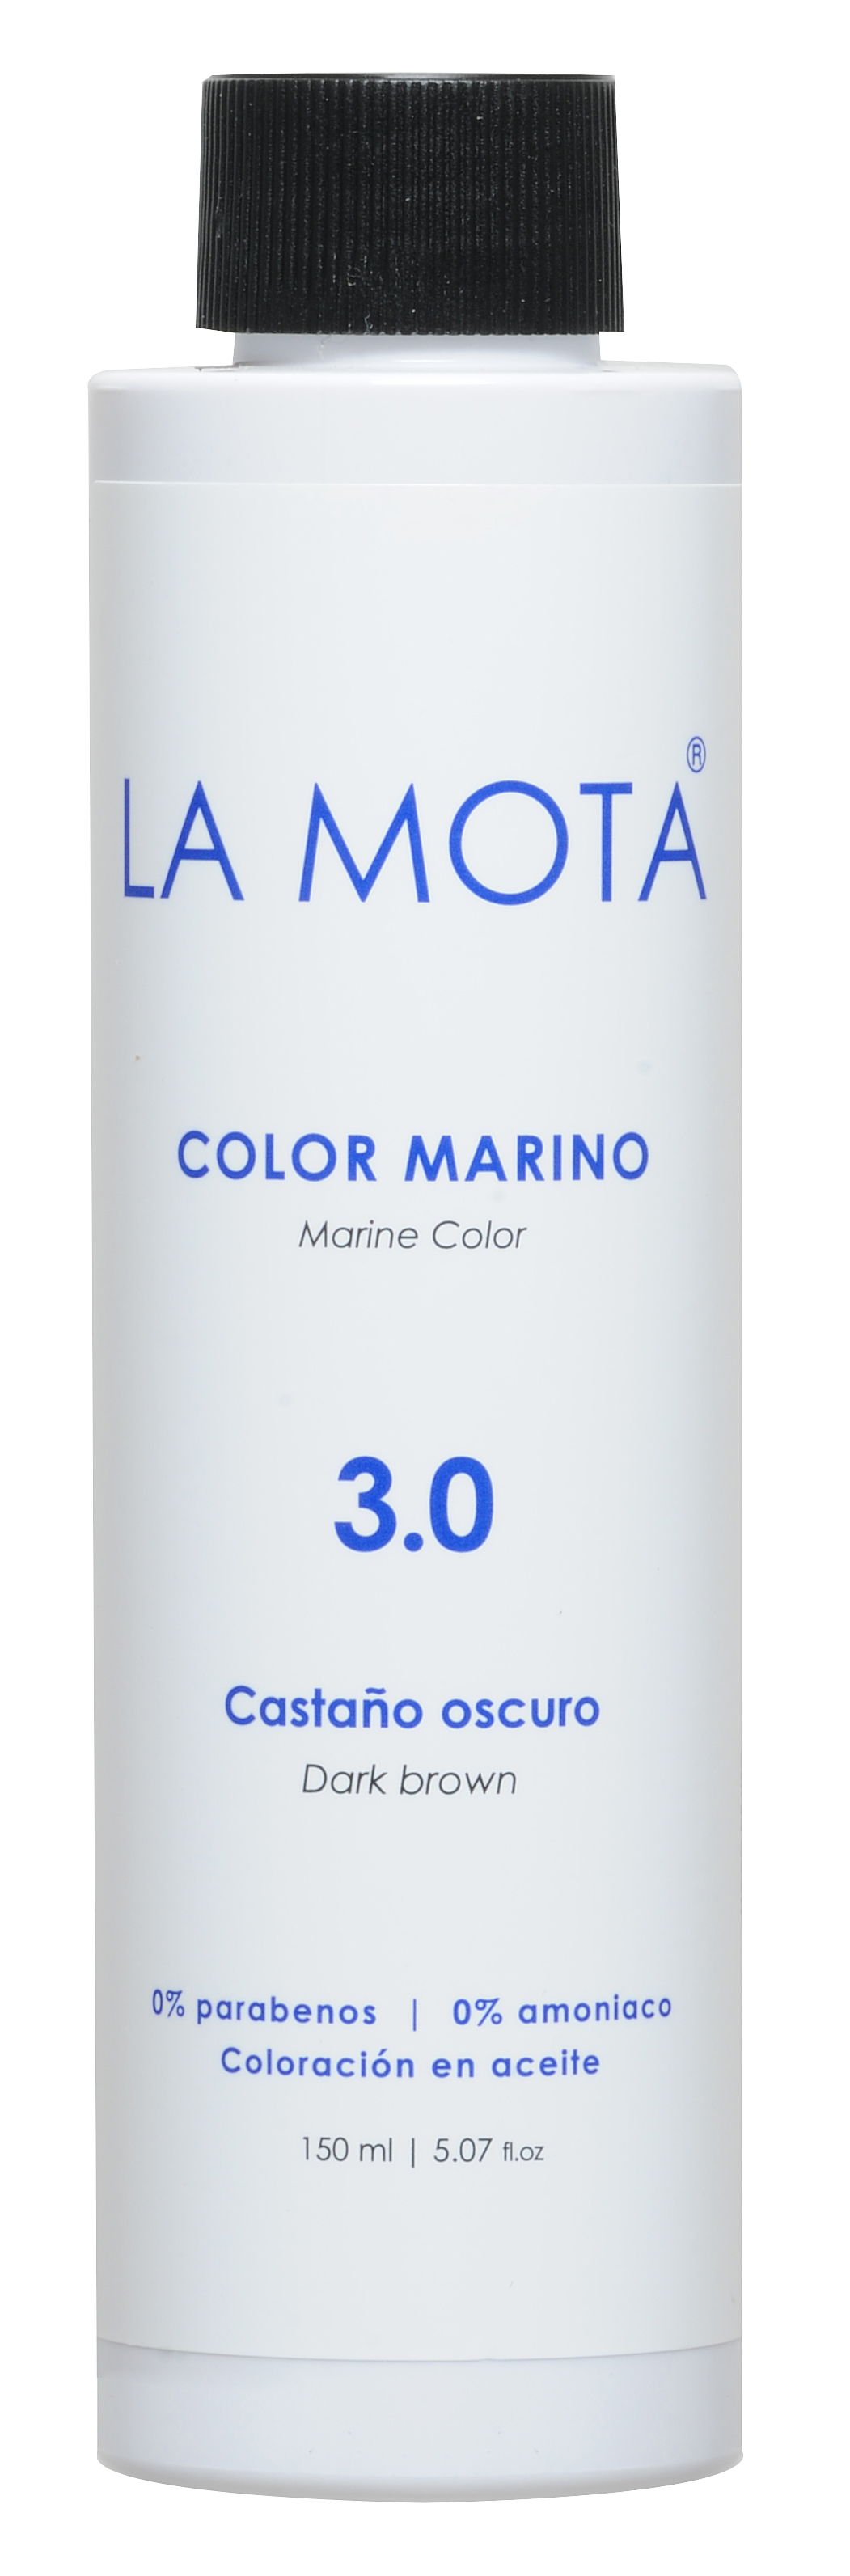 Color Marino 3.0 Castaño Oscuro 150ml